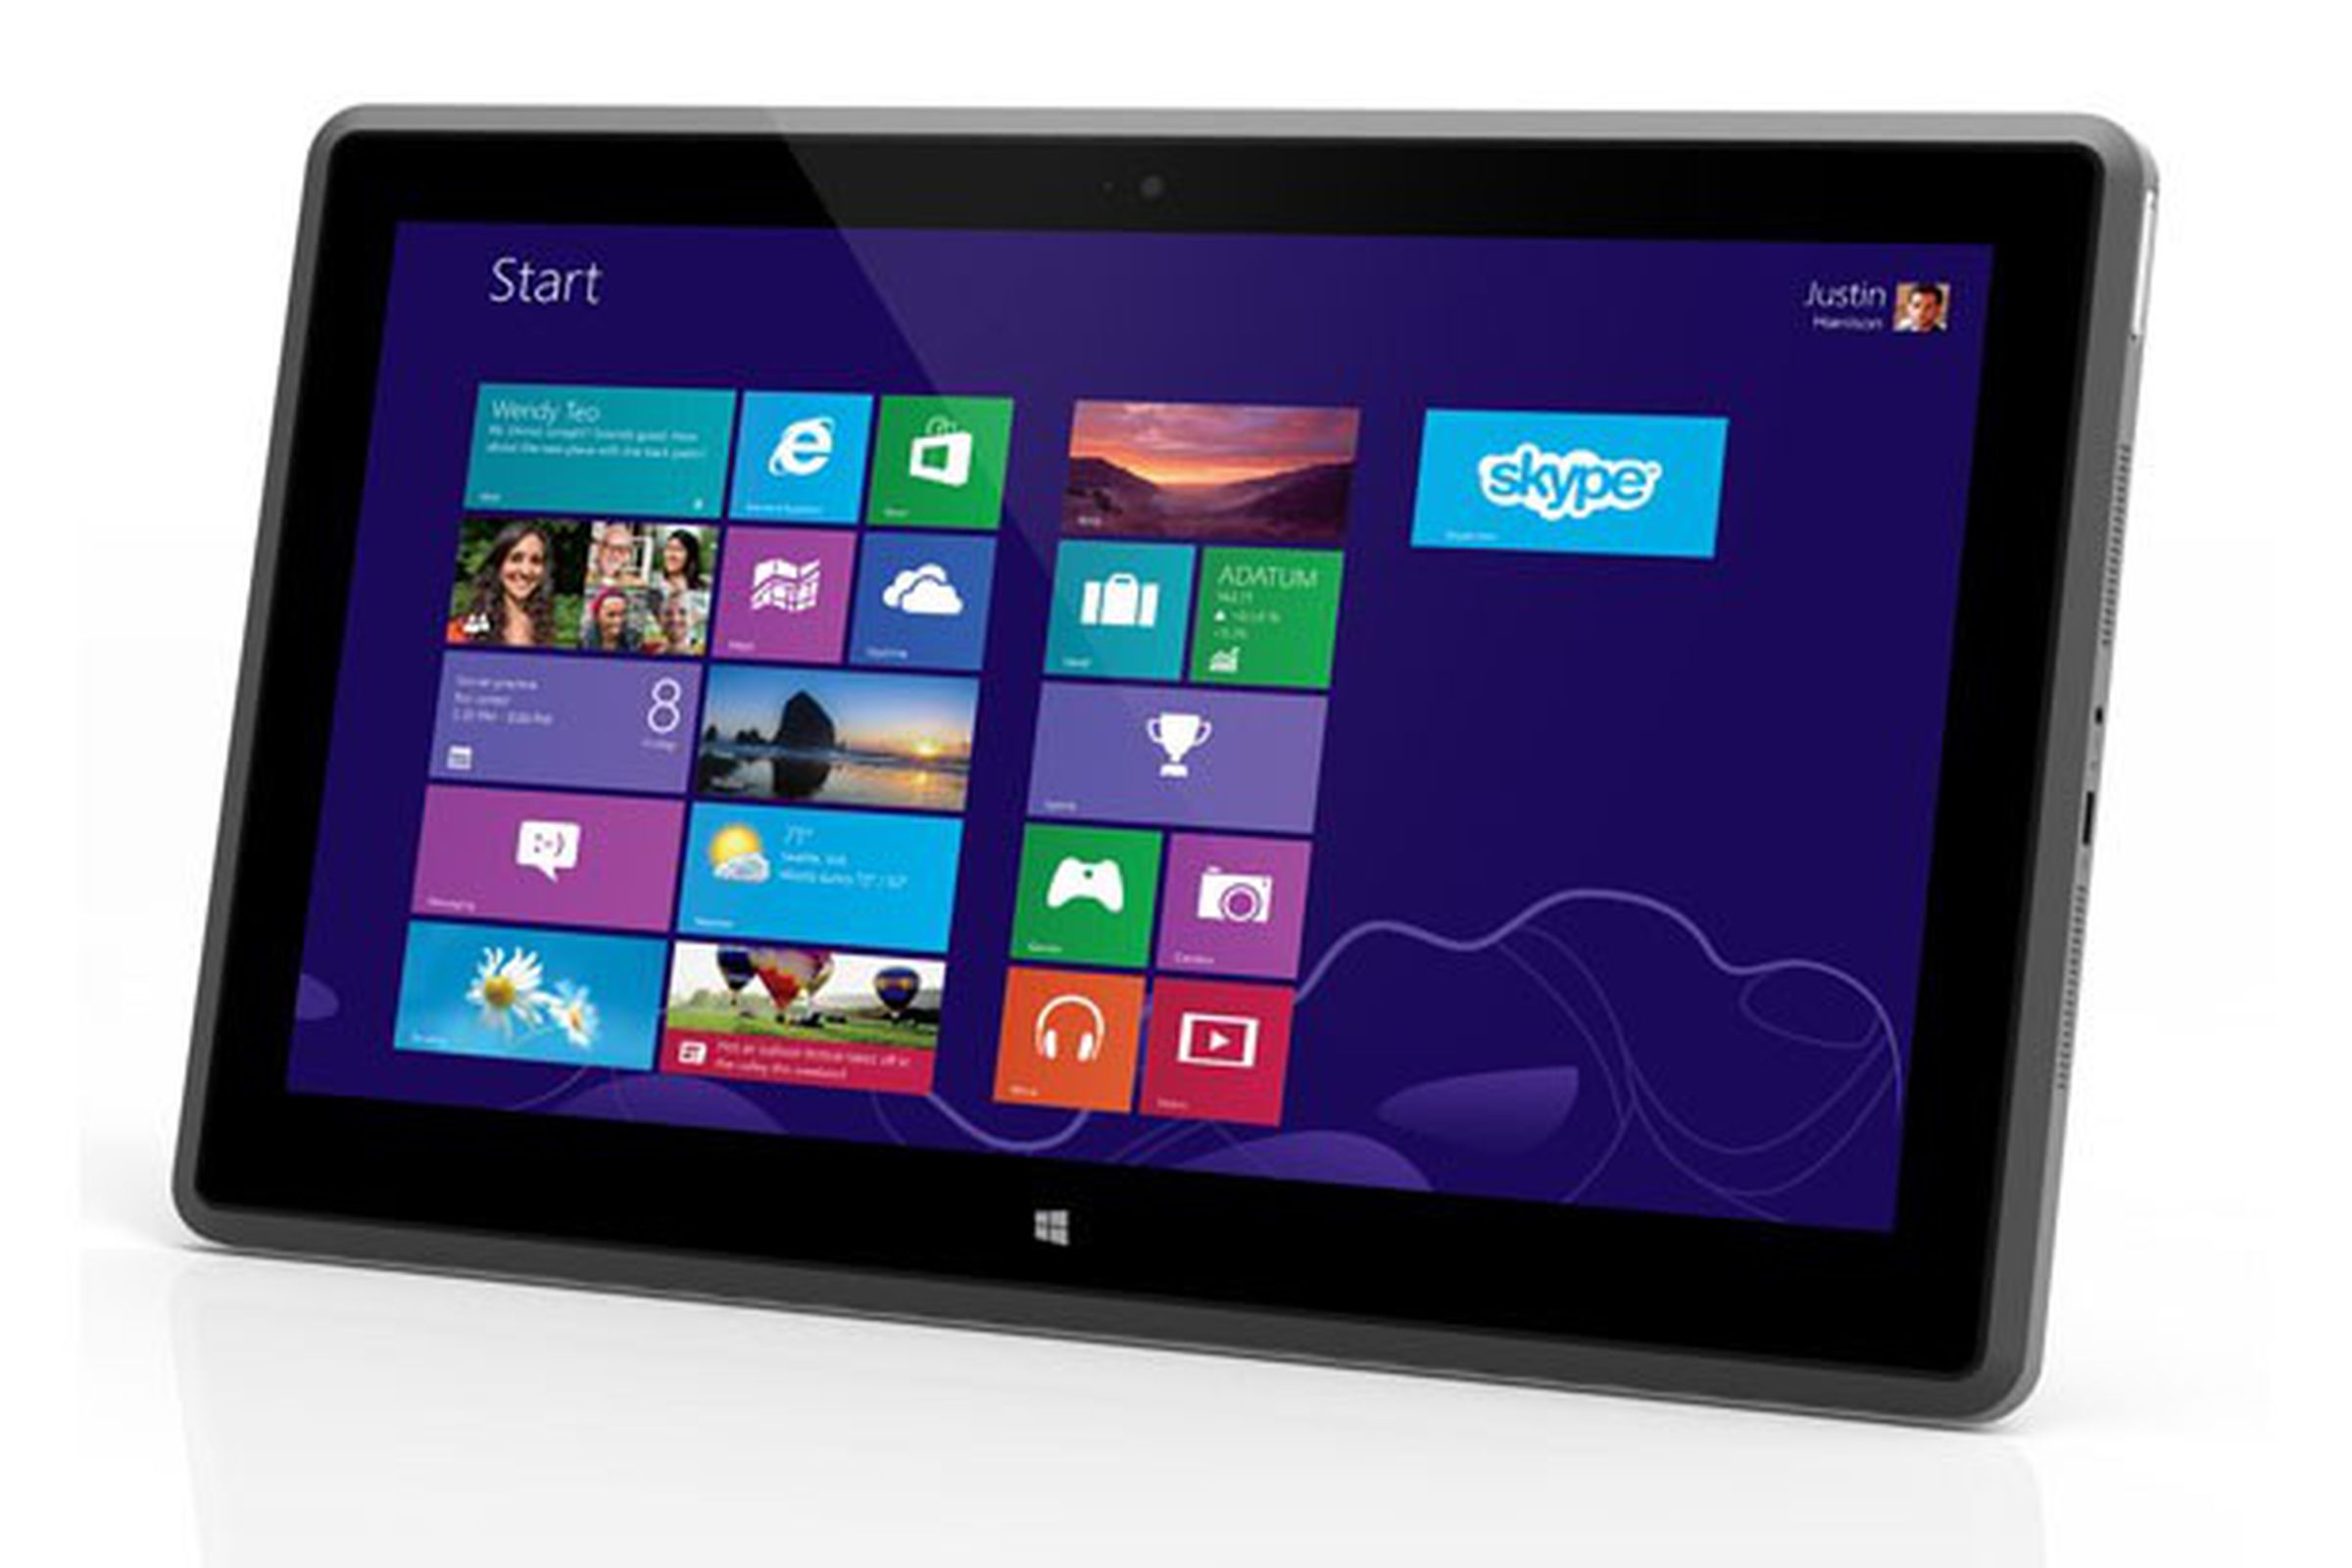 Vizio Windows 8 Tablet PC